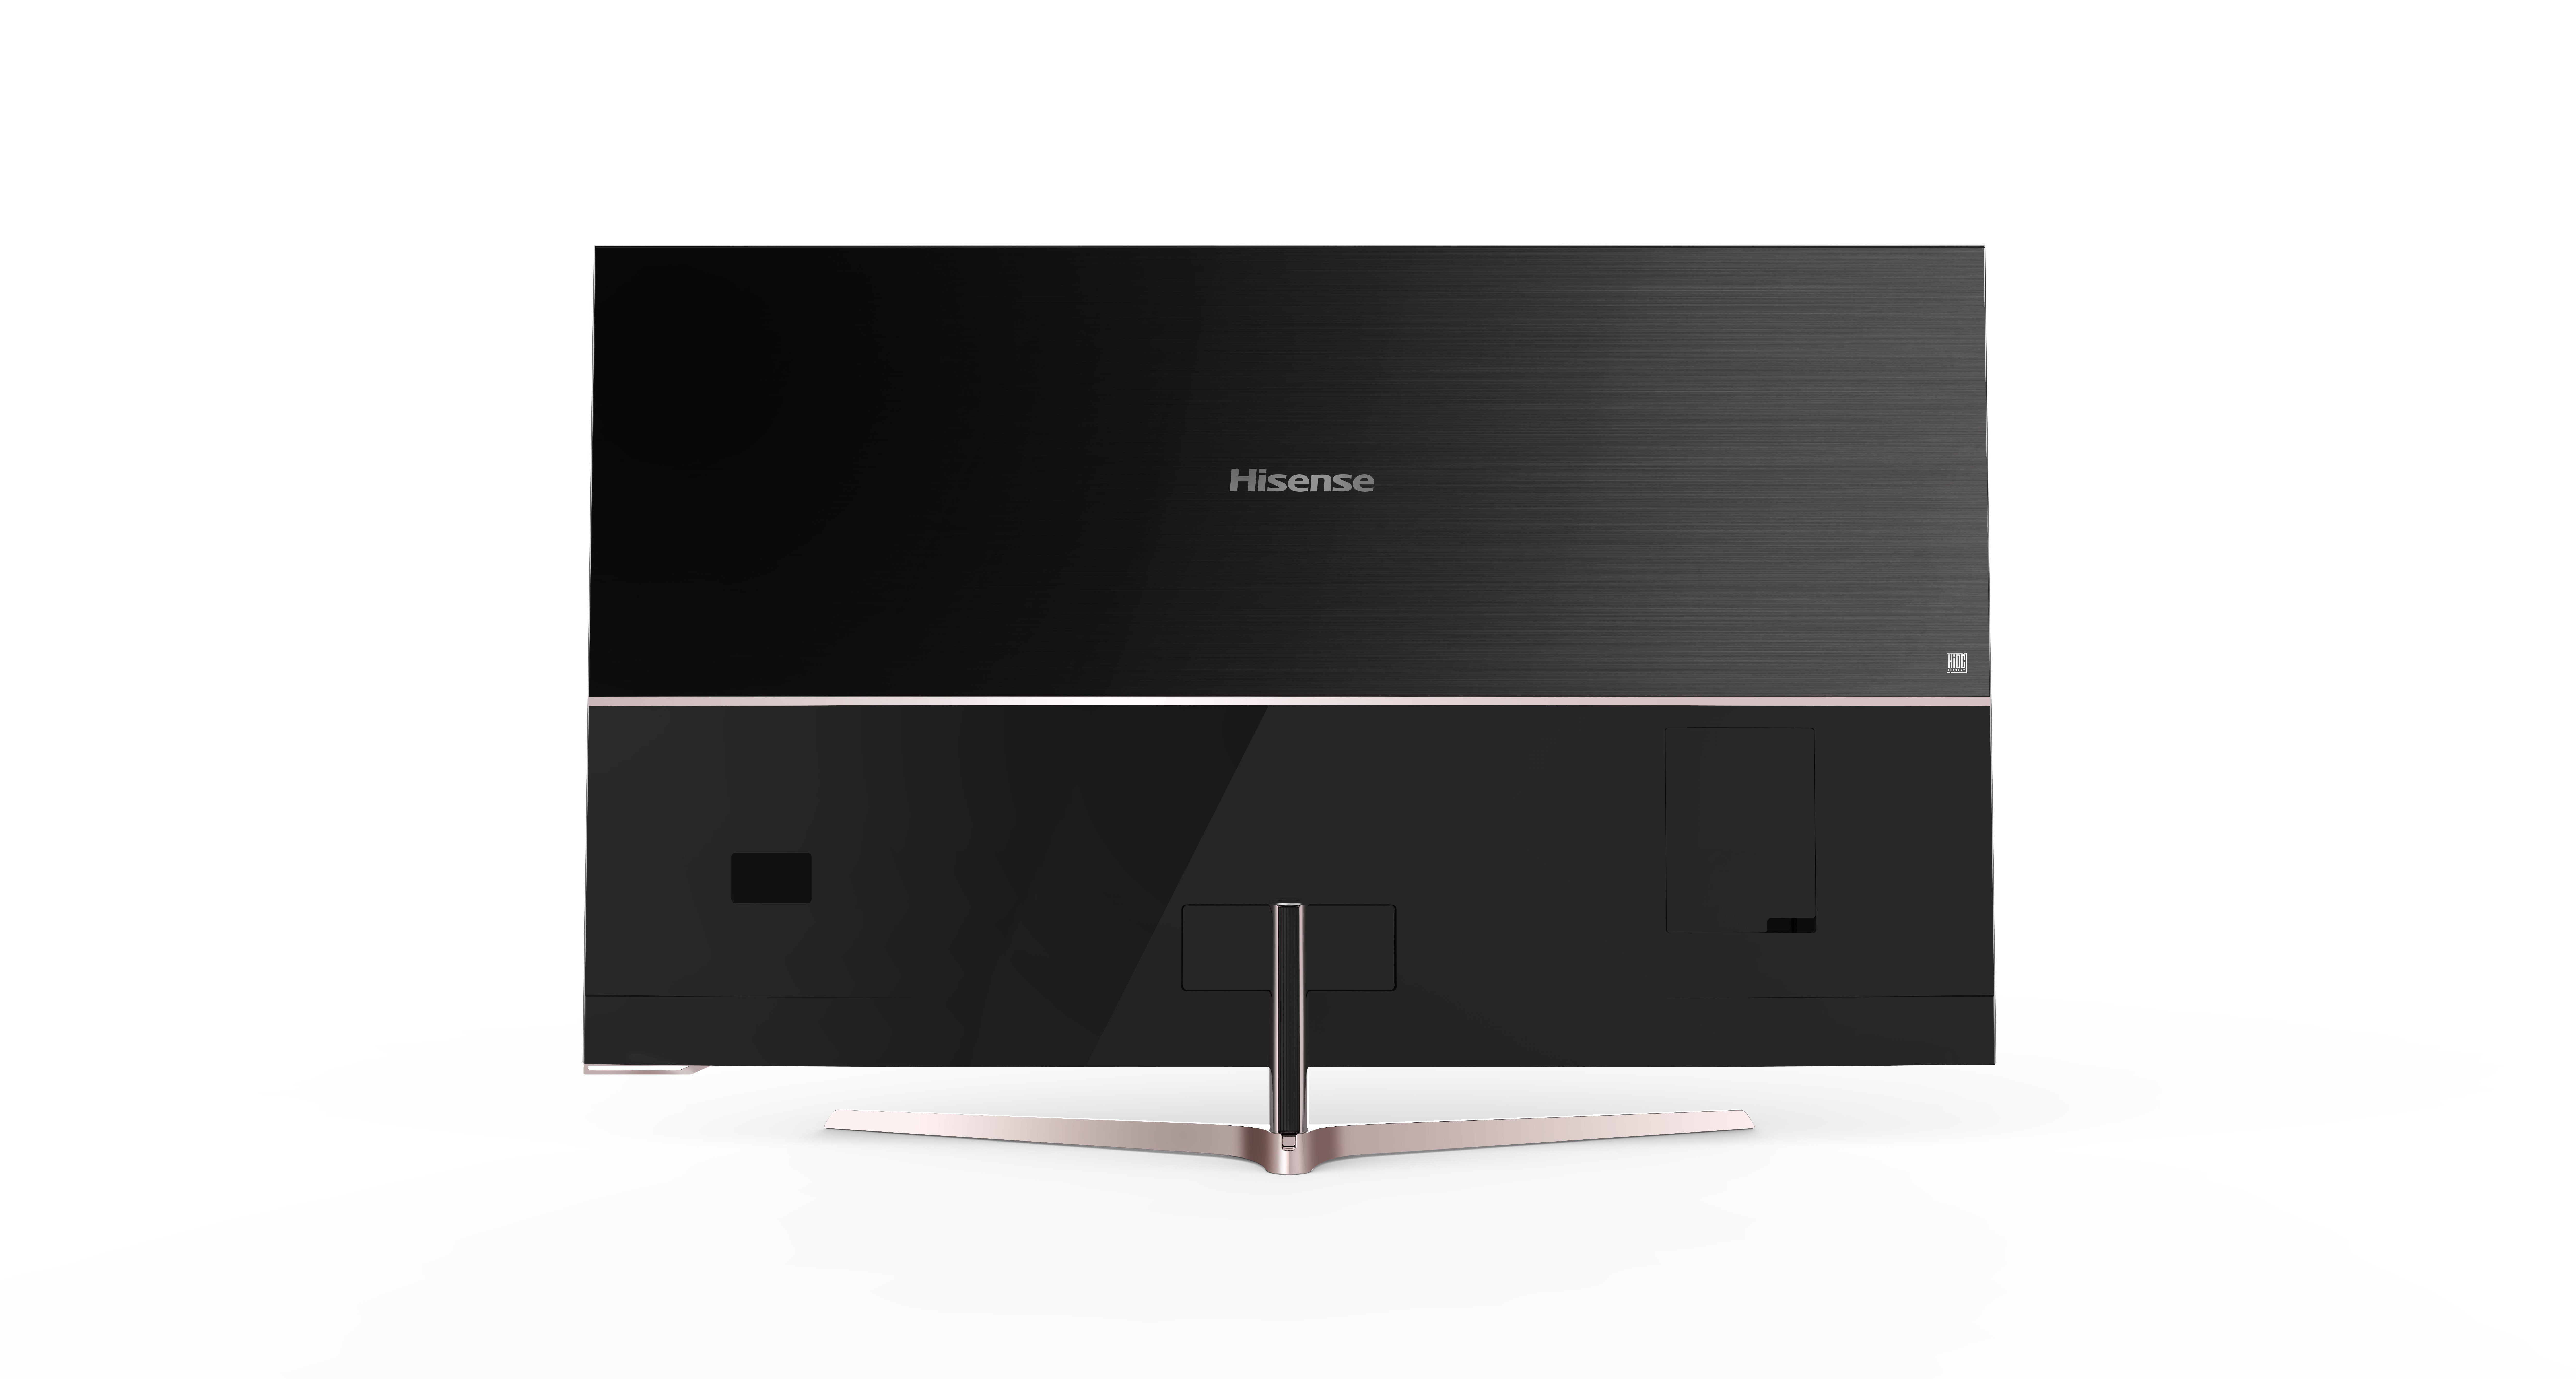 海信(Hisense)LED55NU8800U 55英寸 4K超高清智能量子点电视 ULED画质 VIDAA系统高清大图